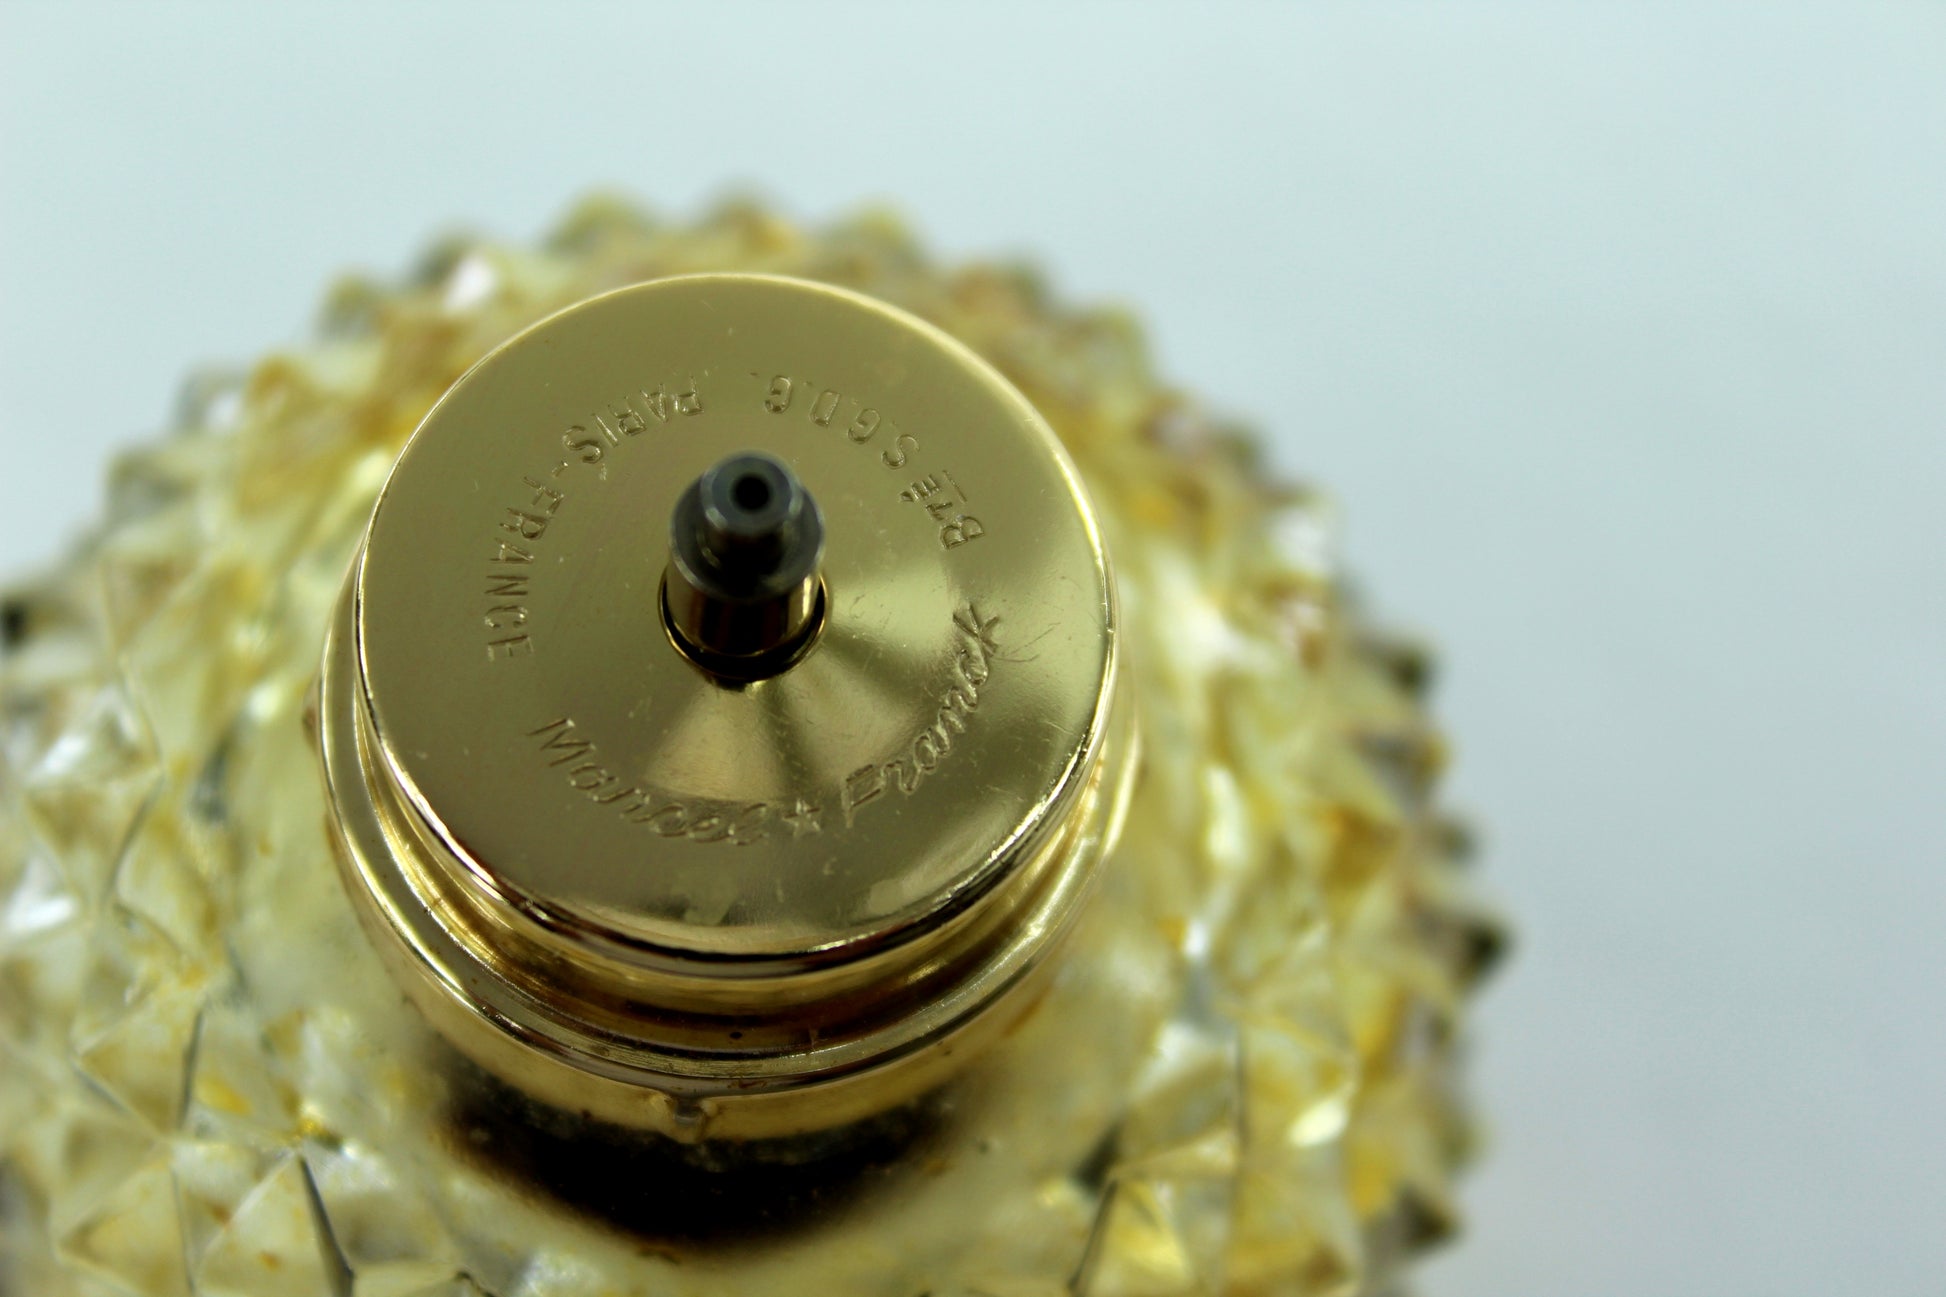 Vintage Before 1968 Marcel Franck Hobnail Perfume Bottle Empty engraved mmaker name under cap